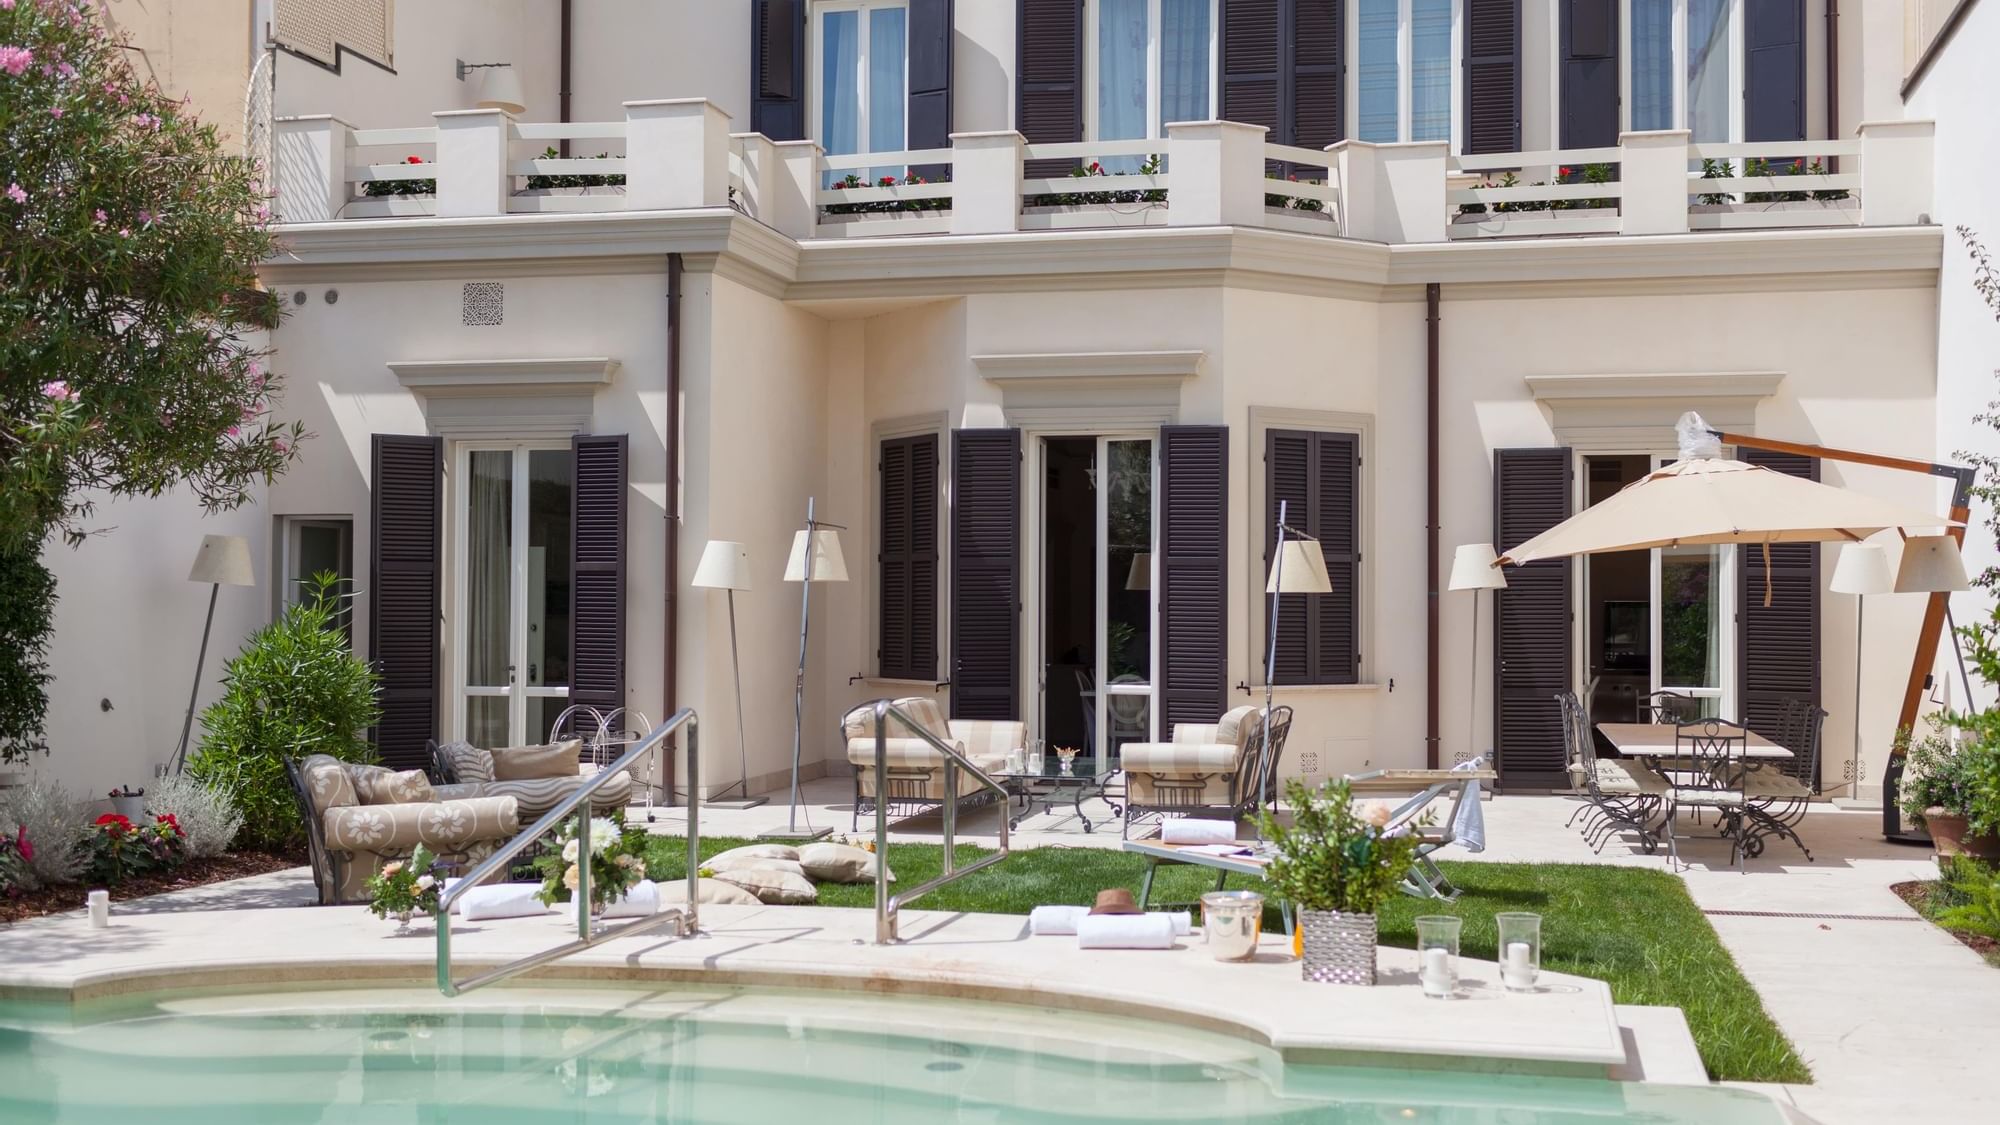 Luxury Villa Manin Viareggio UNA Esperienze